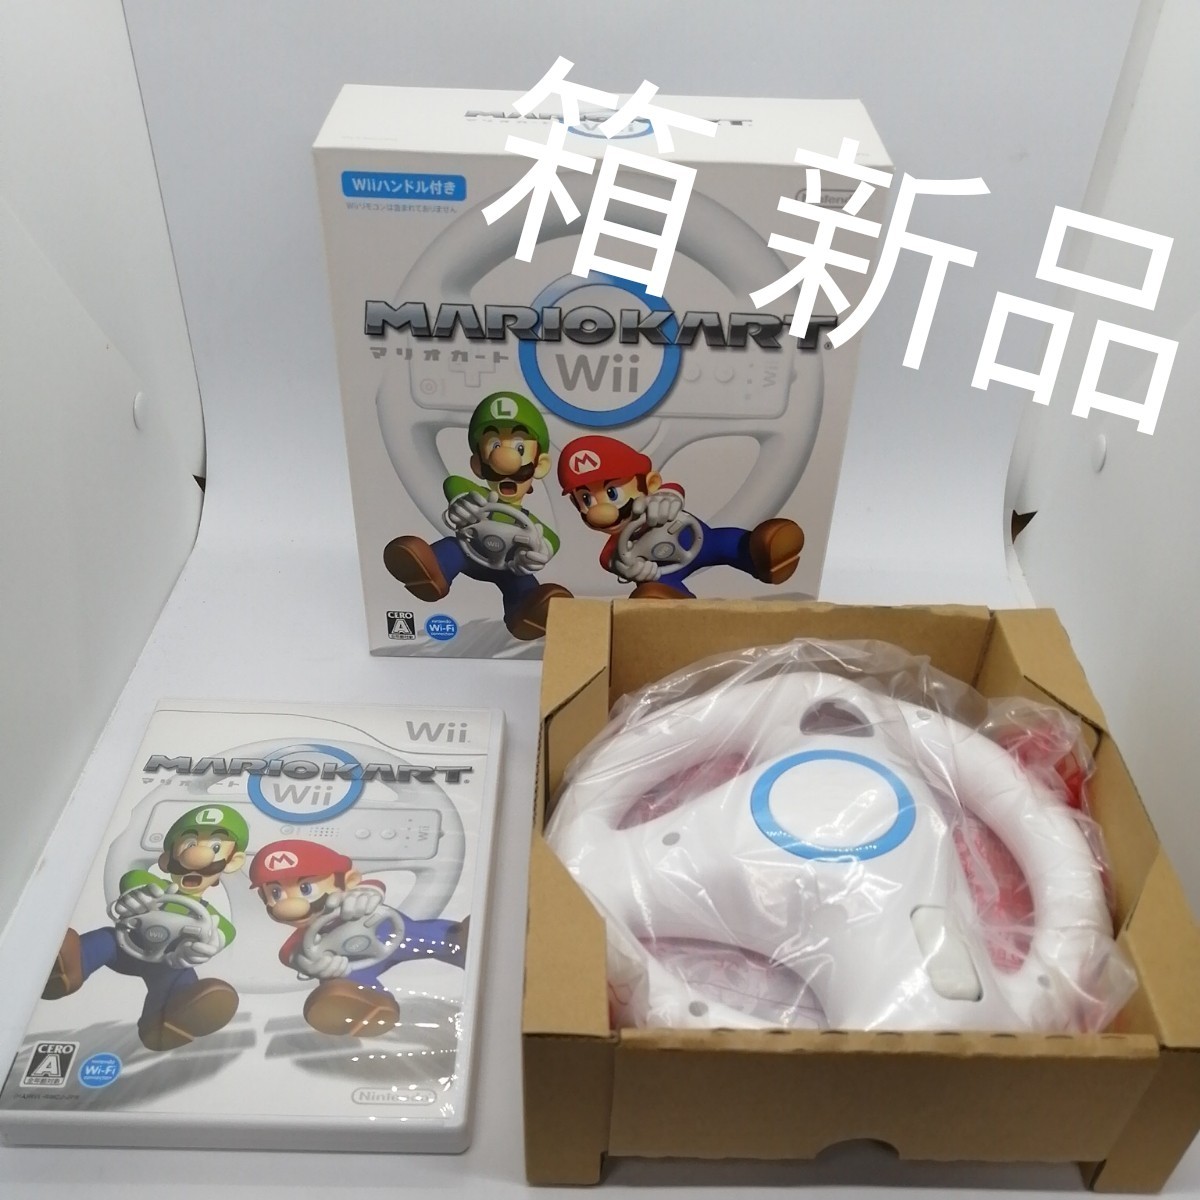 【箱新品】Wii マリオカートWii 同梱版 Wiiハンドル ソフト 美品  マリオカート 